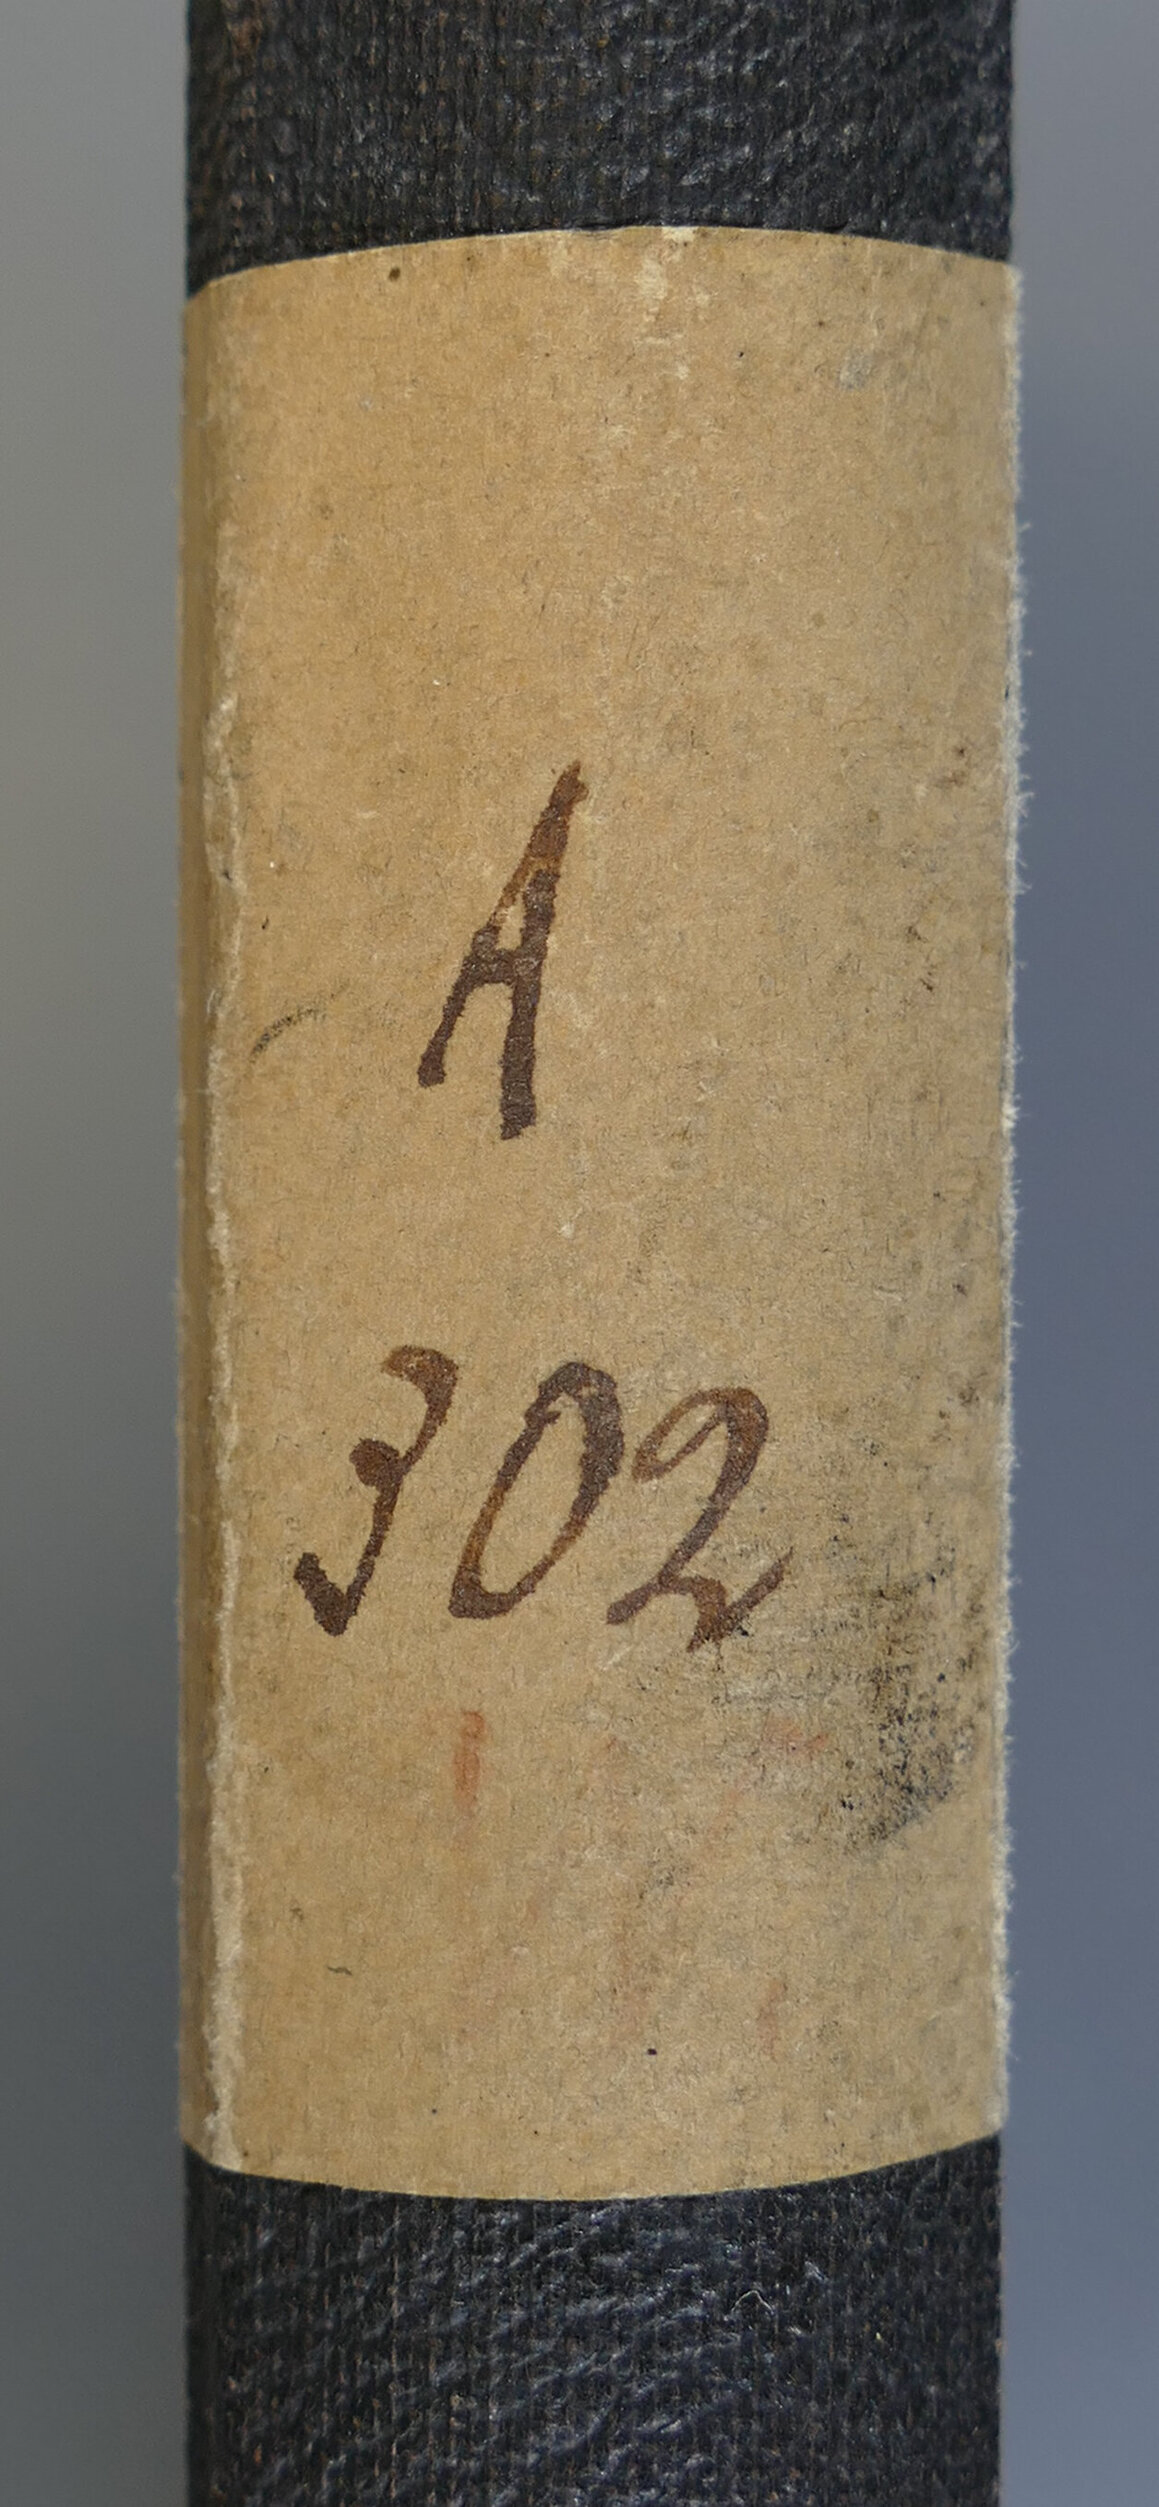 Ein Buchrücken mit Aufkleber auf dem eine Signatur "A 302" handschriftlich vermerkt wurde.